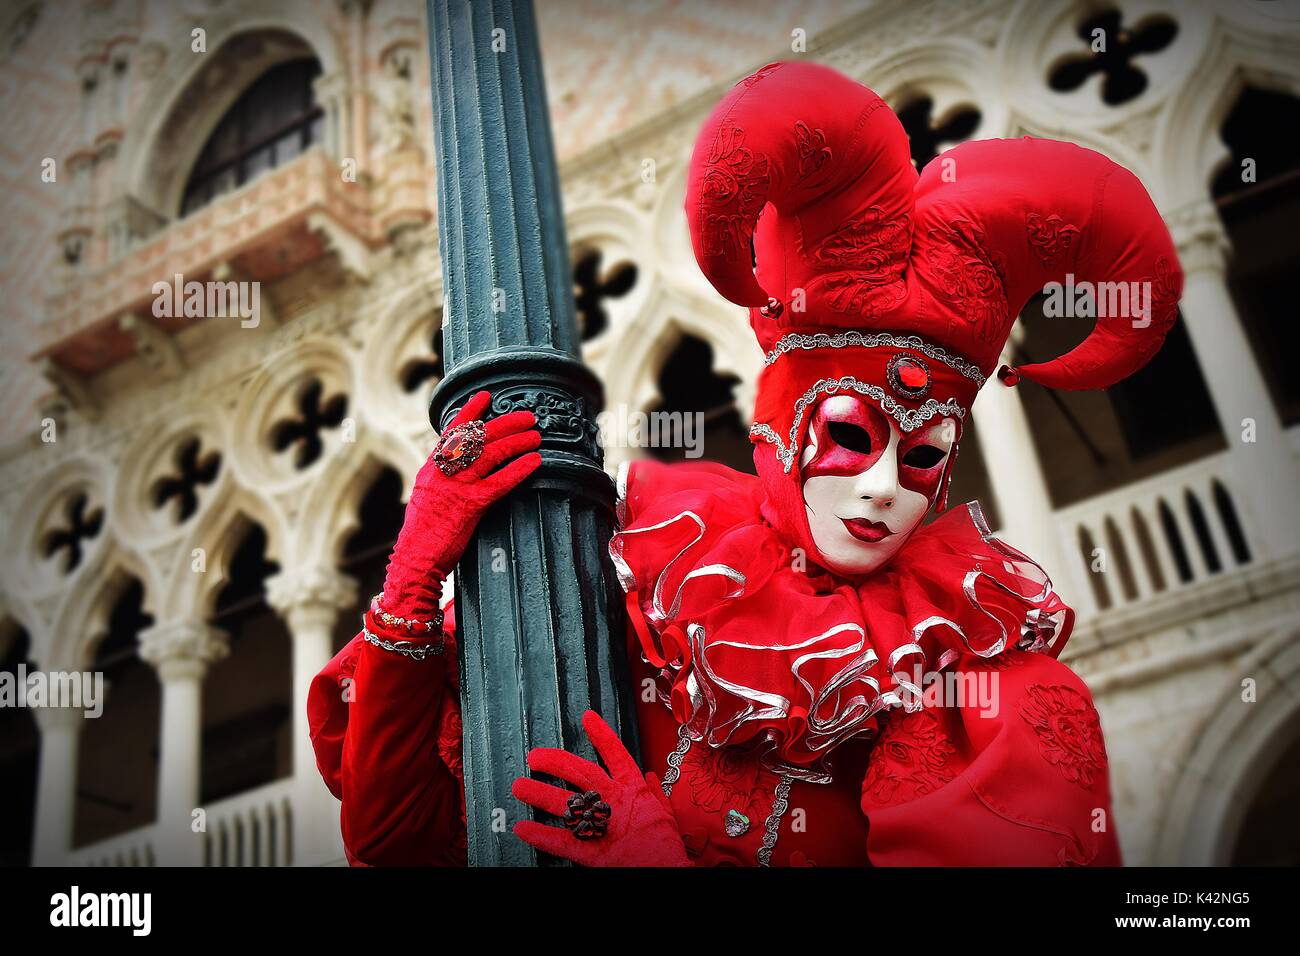 Une personne dans un costume de joker rouge accroché à un lampadaire lors d'une mascarade au Carnaval de Venise. Banque D'Images